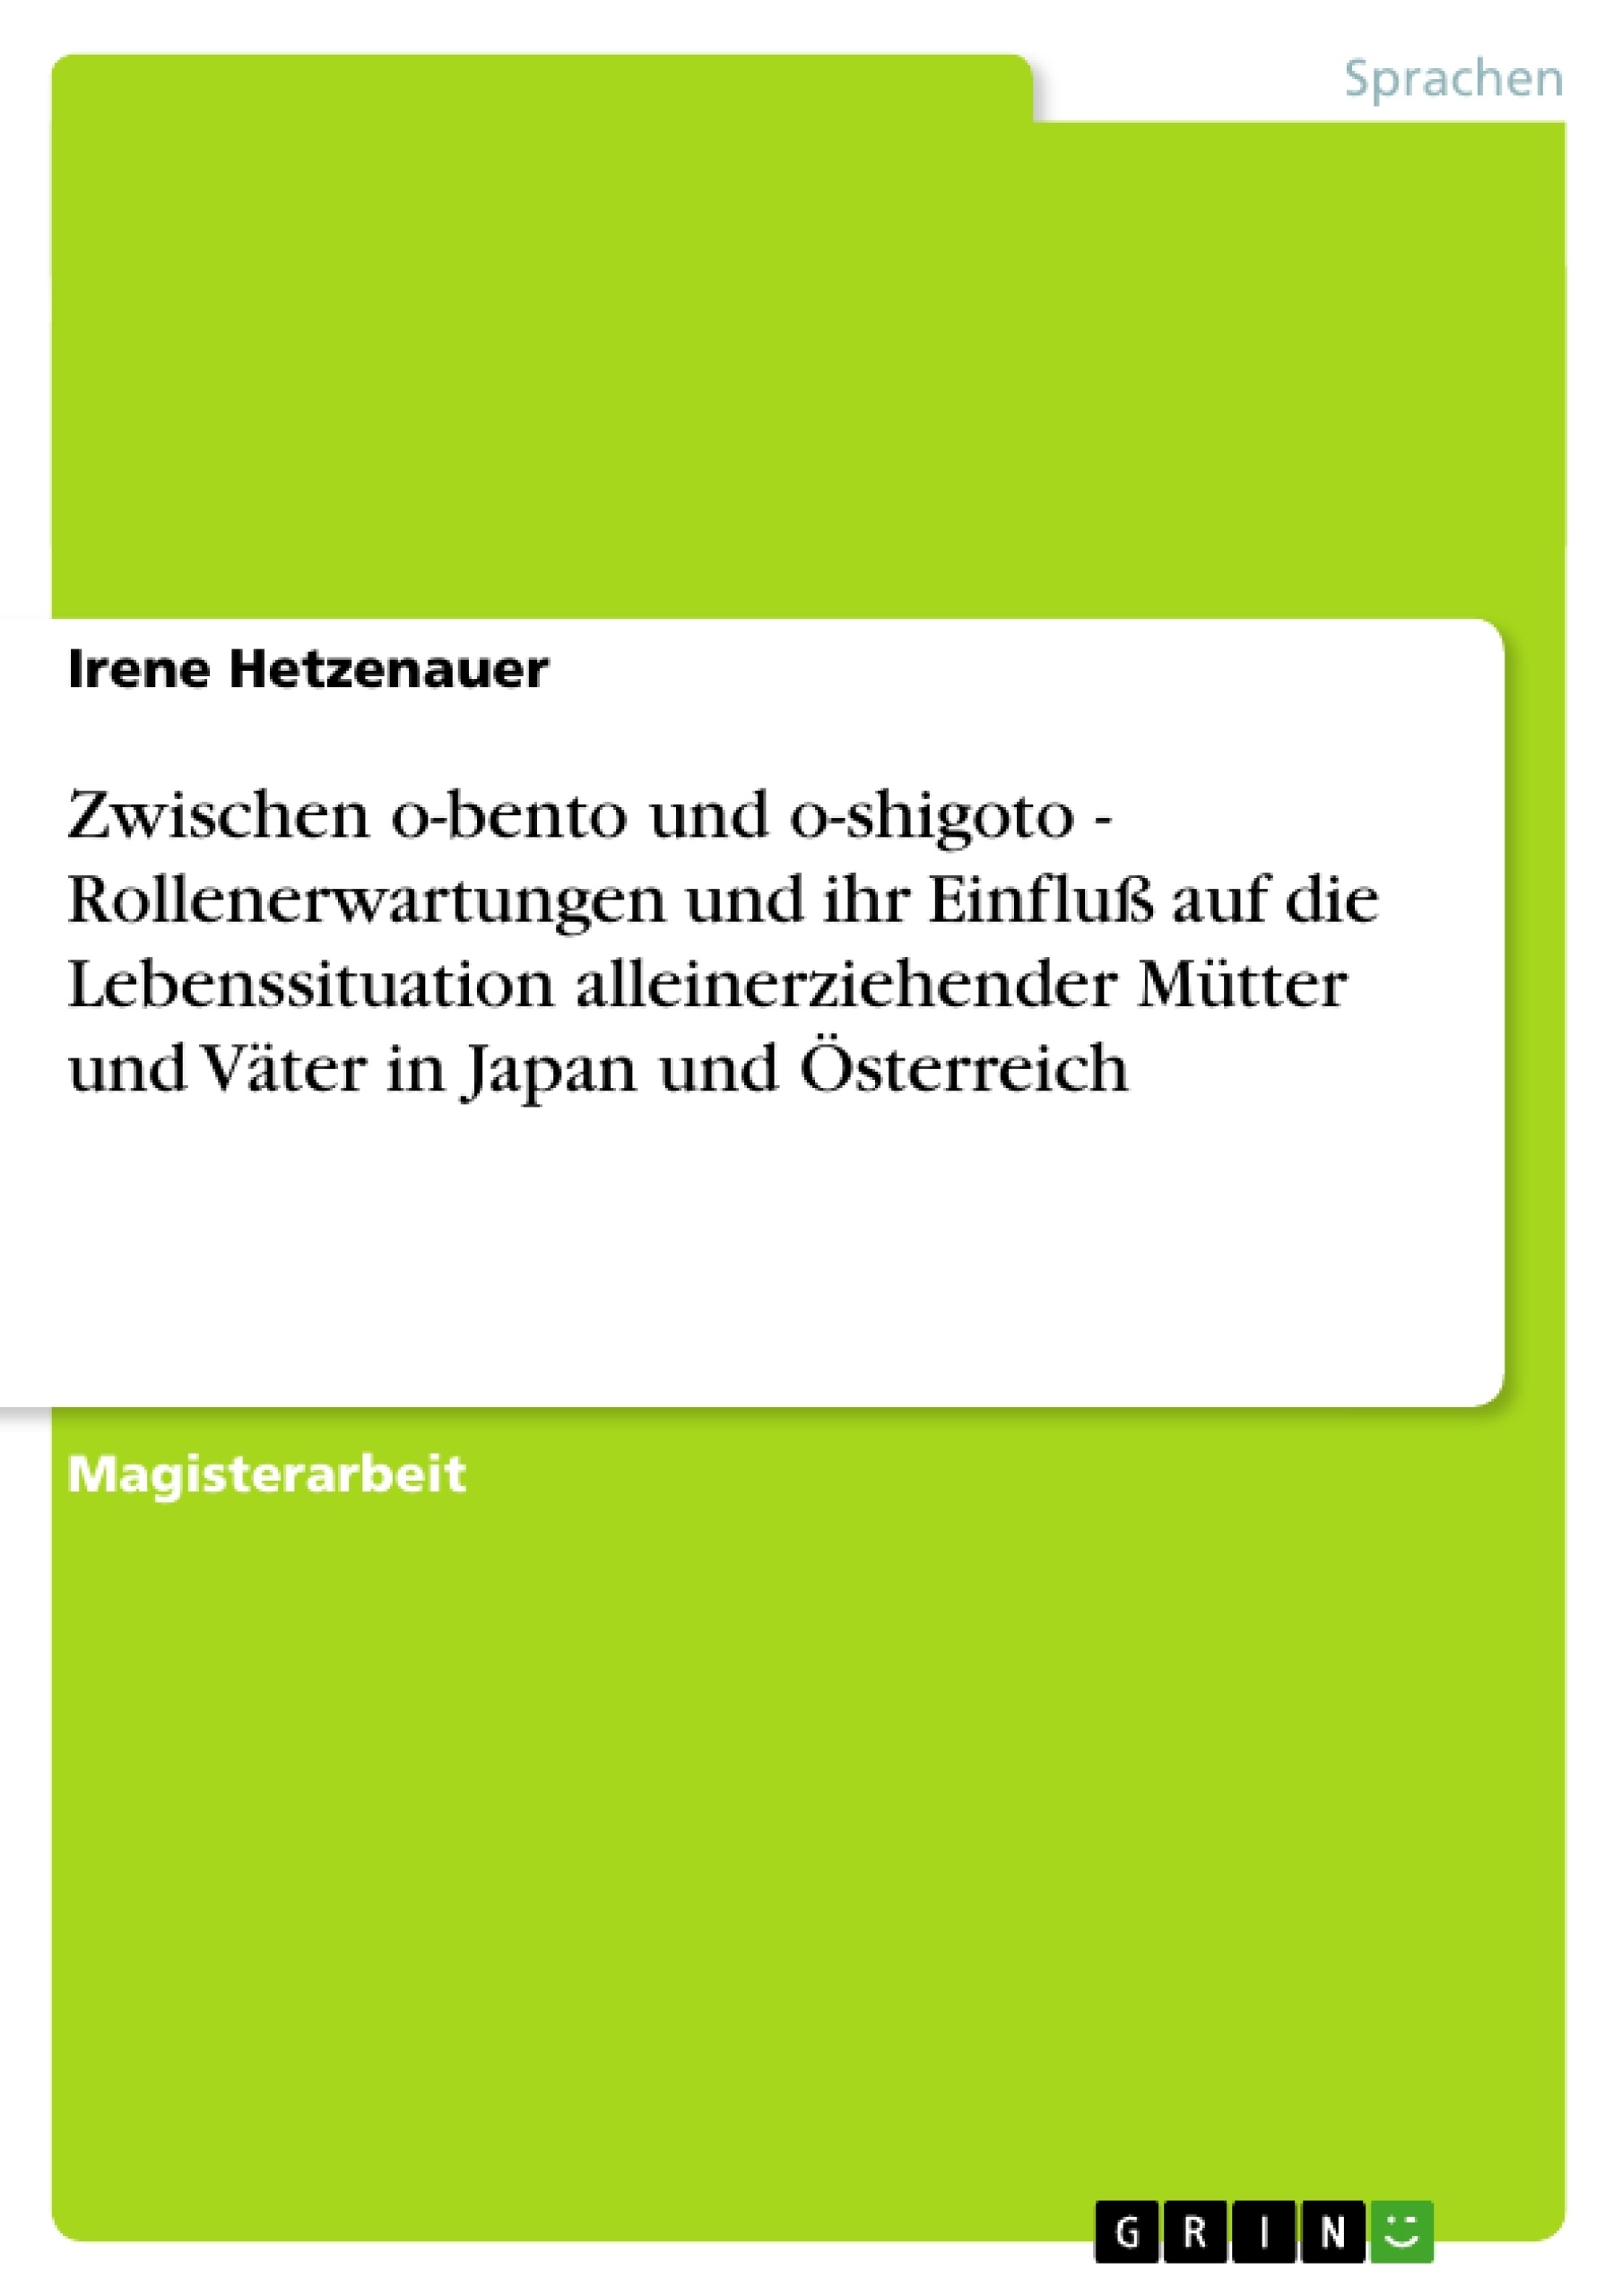 Titel: Zwischen o-bento und o-shigoto - Rollenerwartungen und ihr Einfluß auf die Lebenssituation alleinerziehender Mütter und Väter in Japan und Österreich